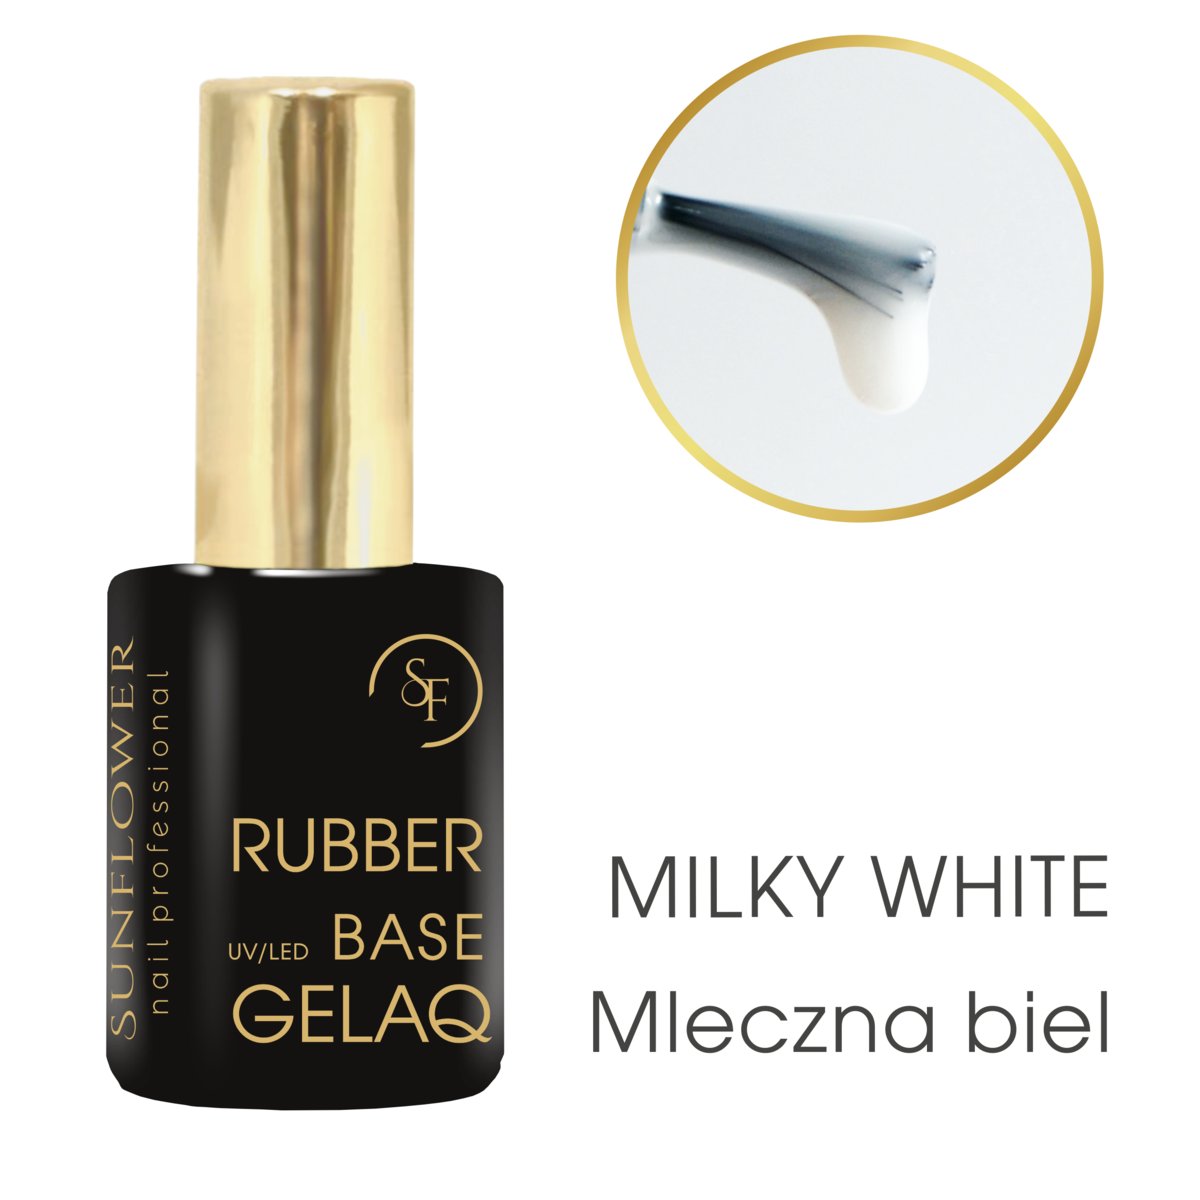 Gelaq Base Rubber 9g Milky White